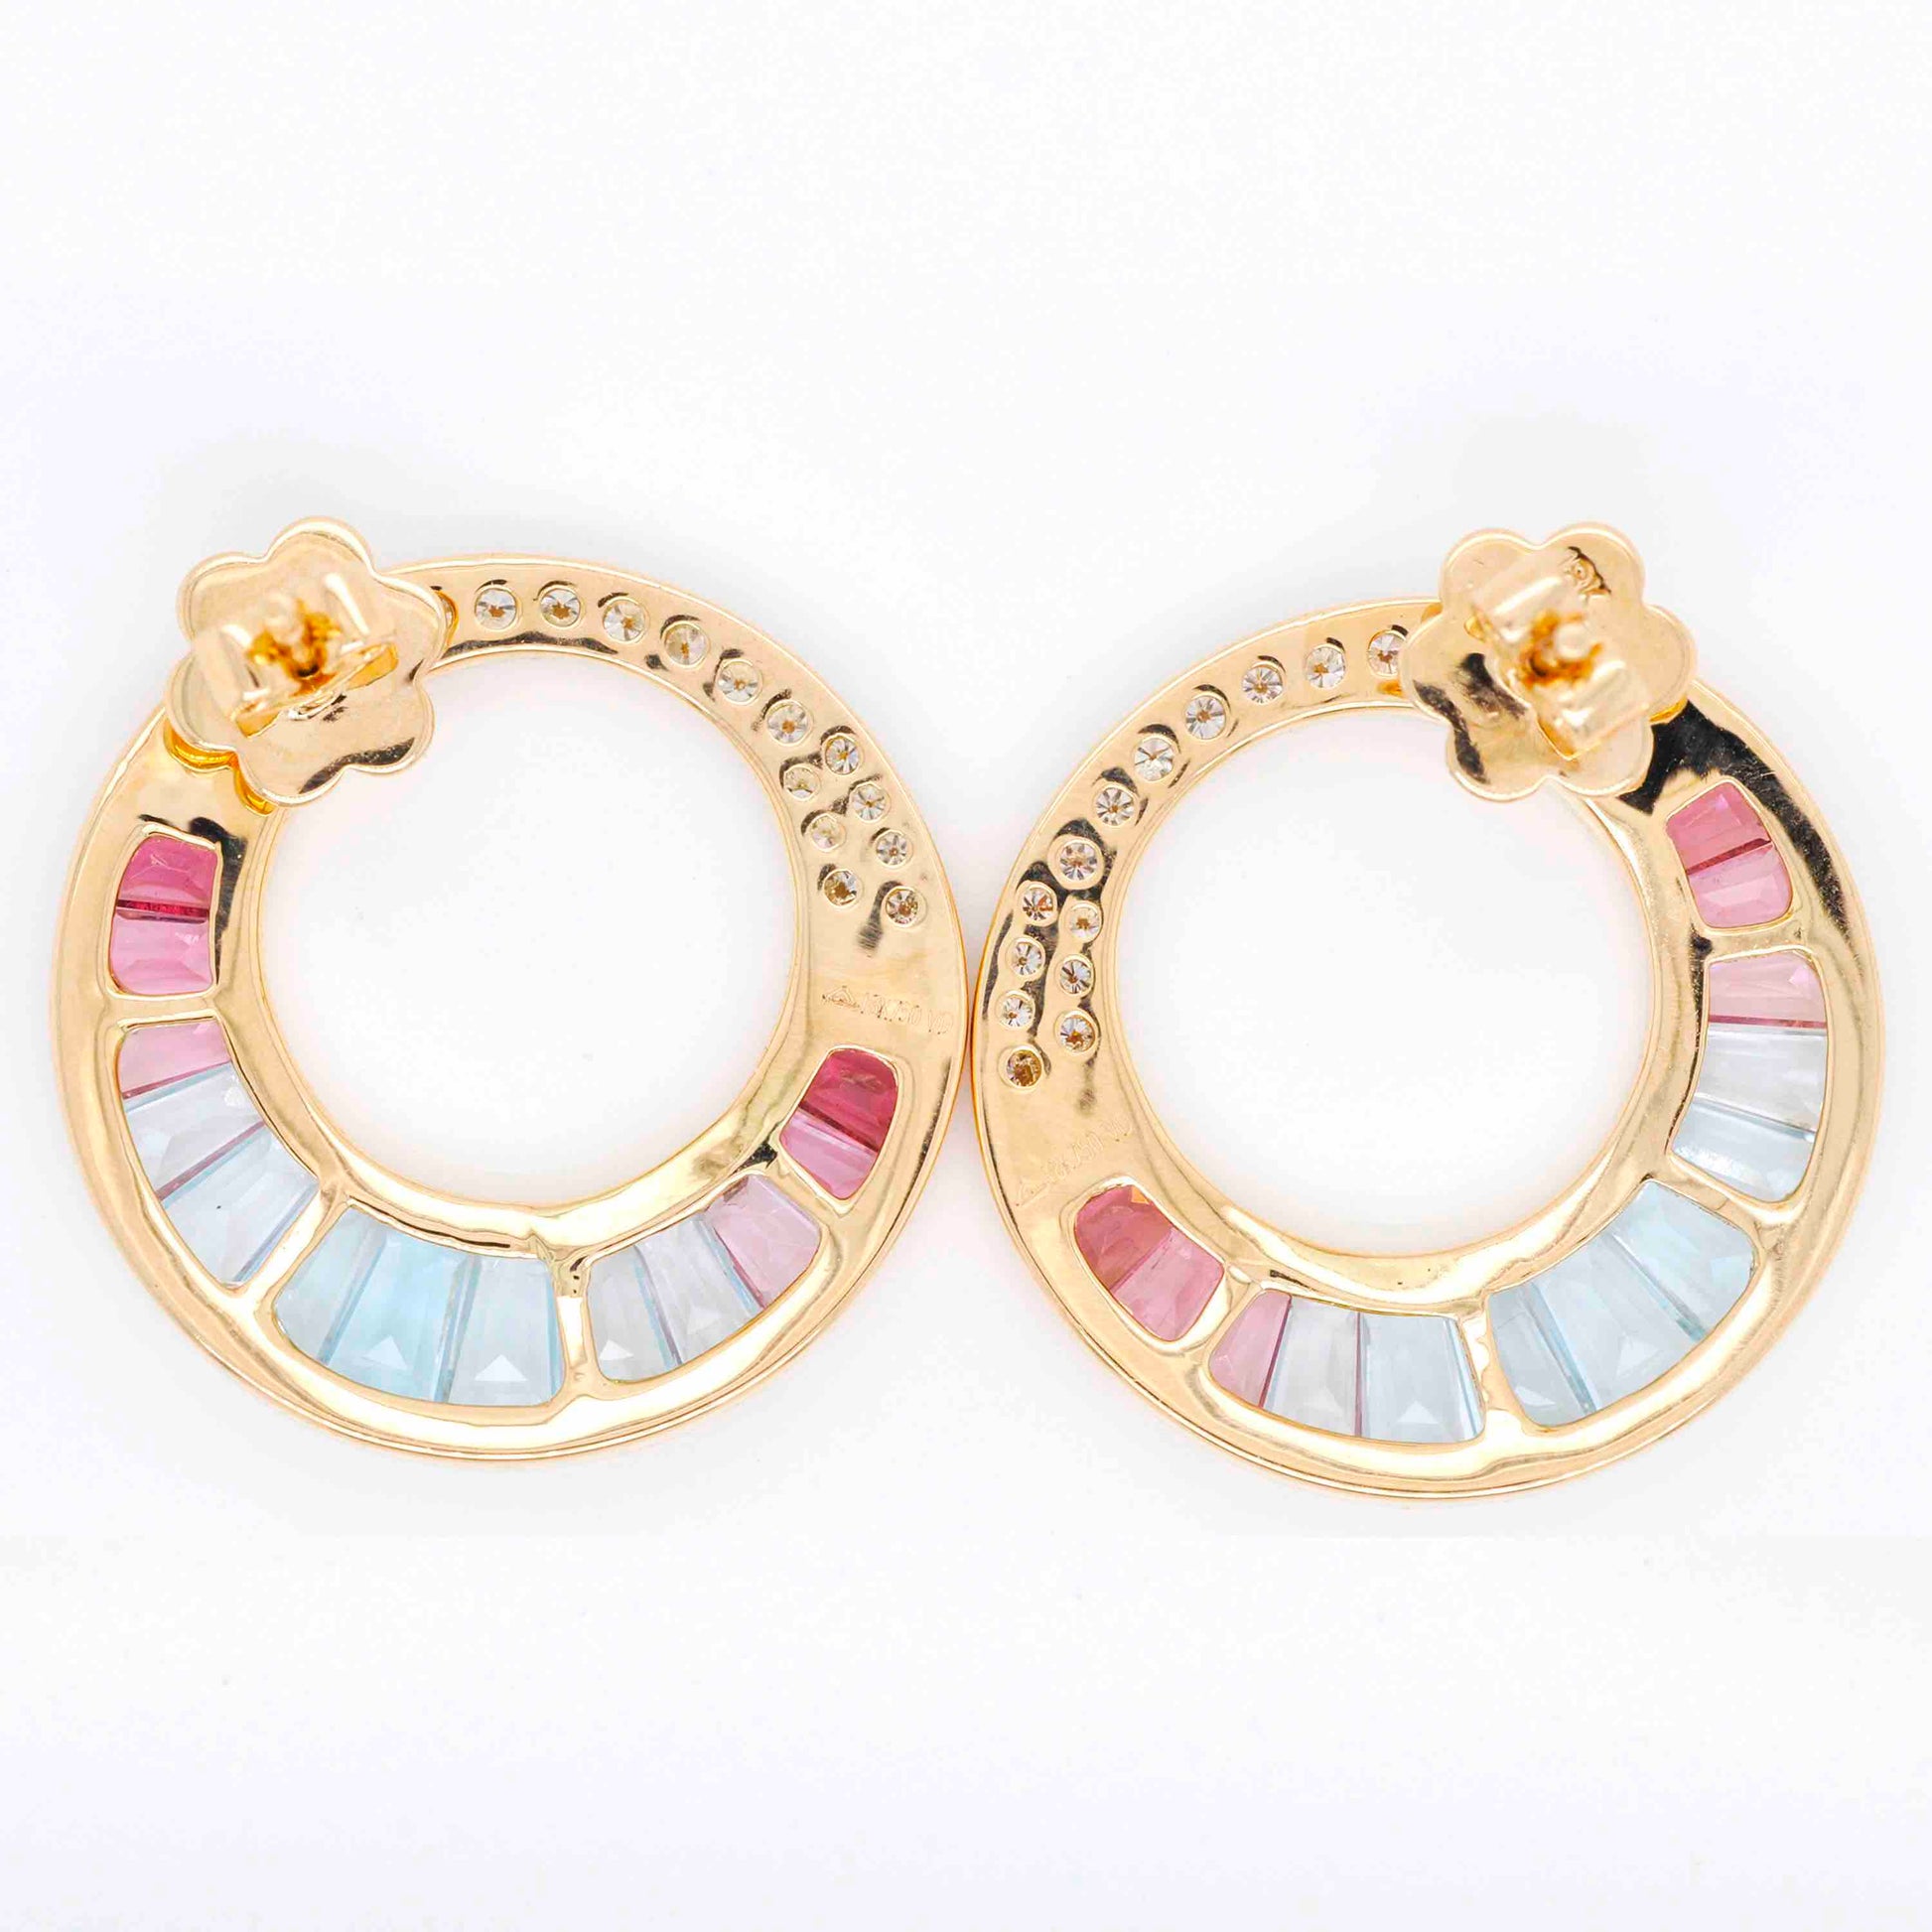 Pink tourmaline earrings in Art Deco style